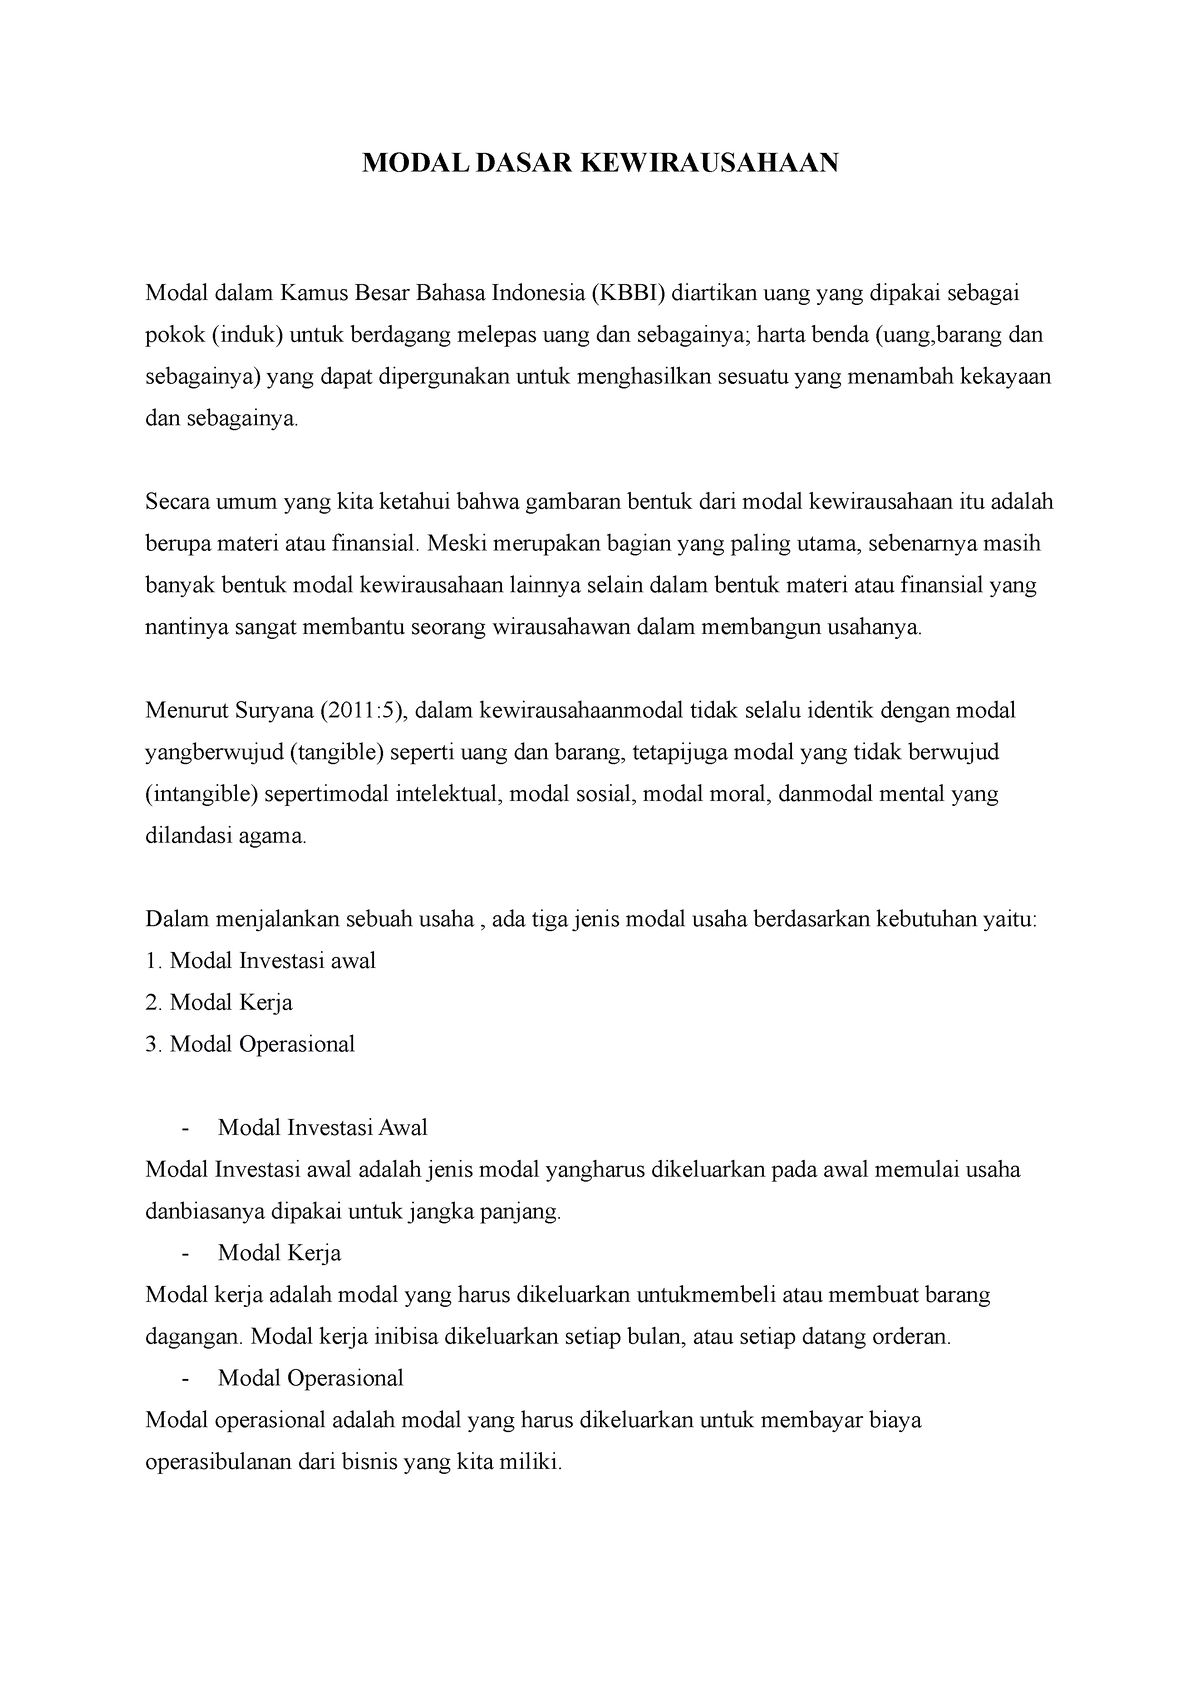 Modal Dasar Kewirausahaan Modal Dasar Kewirausahaan Modal Dalam Kamus Besar Bahasa Indonesia 0870